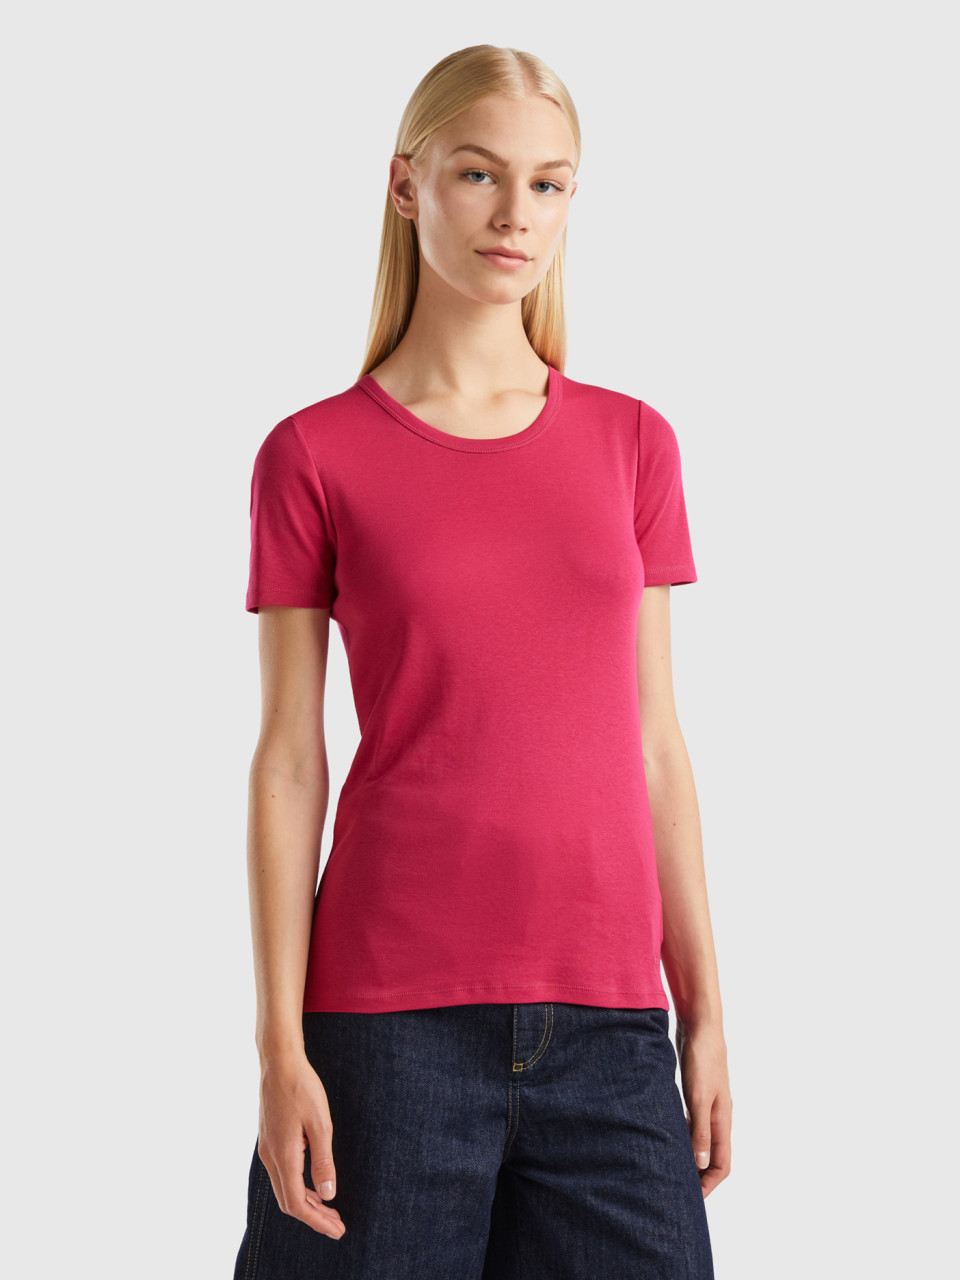 Benetton, Long Fiber Cotton T-shirt, Cyclamen, Women